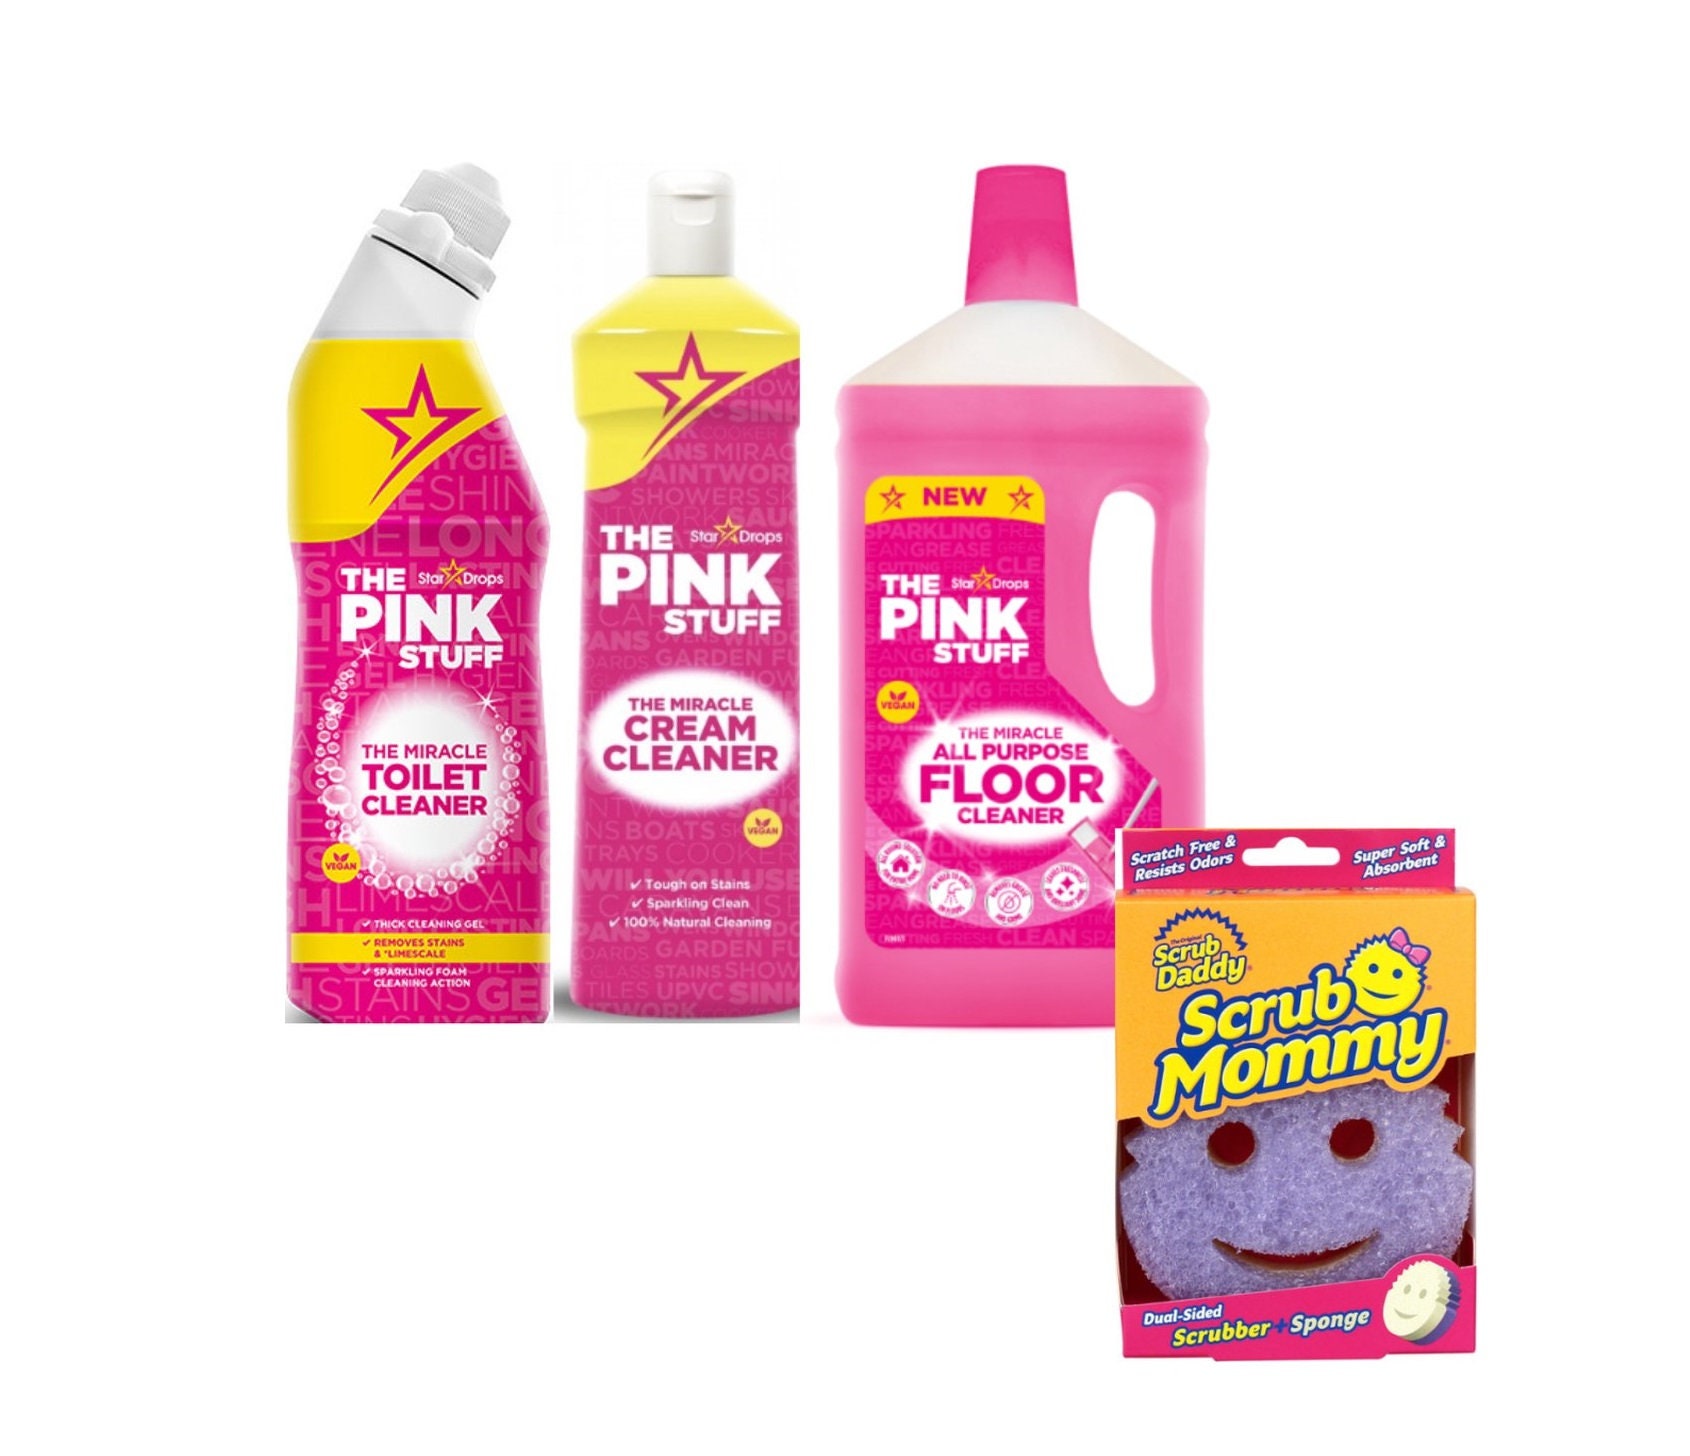 The Pink Stuff: ¿para qué sirve el 'kit' de limpieza “milagroso”? - Showroom